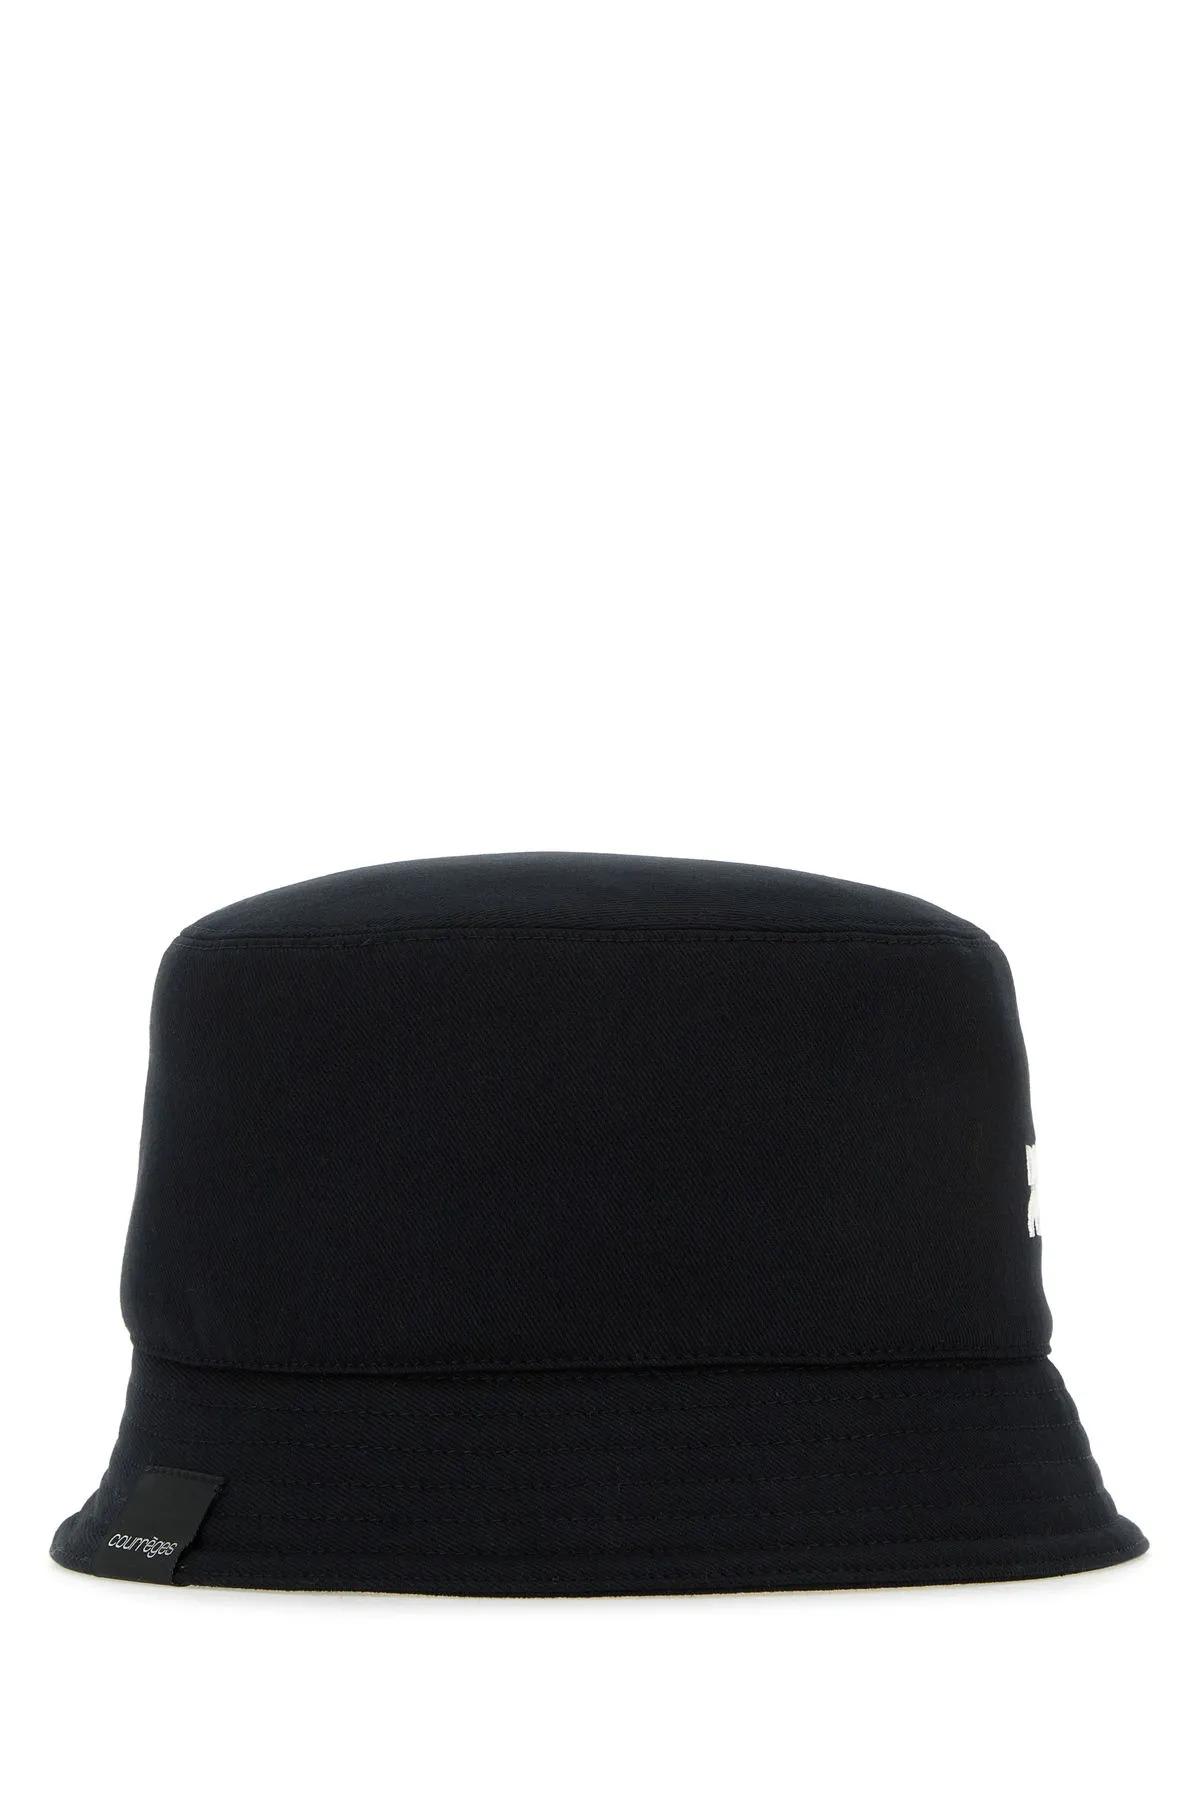 Shop Courrèges Black Cotton Bucket Hat